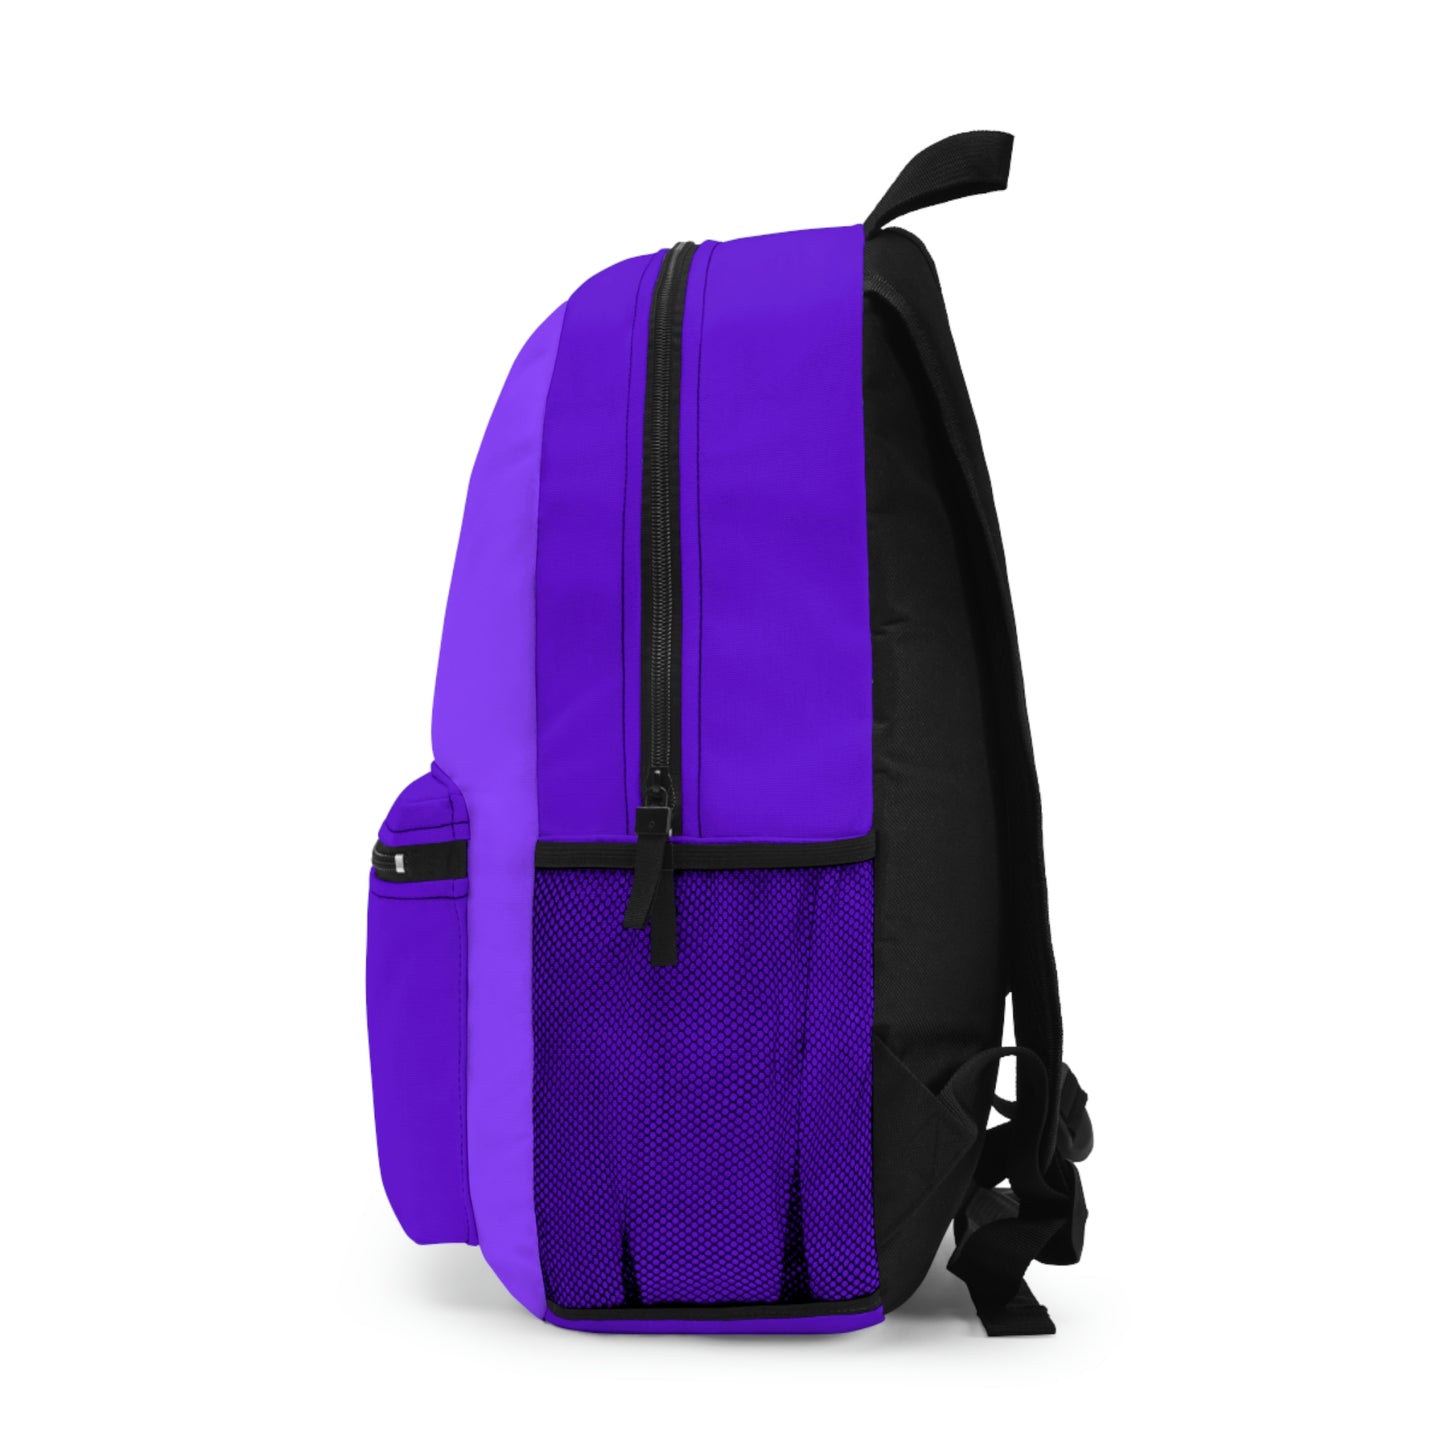 CerenityD's Backpack